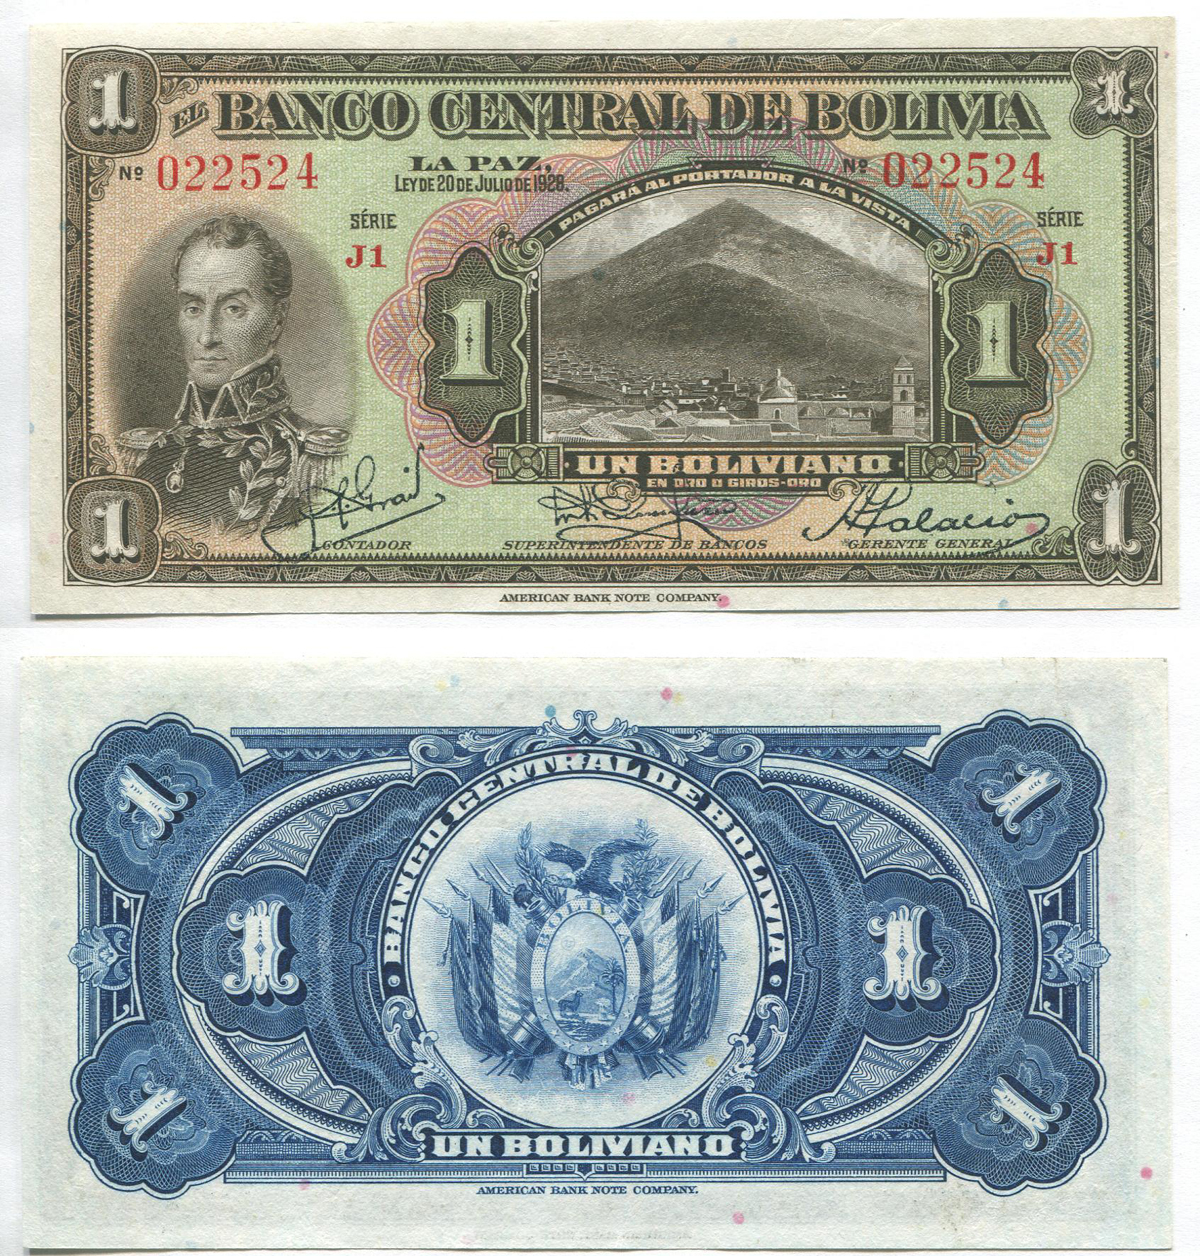 Боливия. 1 боливиано. 1928 г. Pick № 118a. ABNC. J1 # 022524